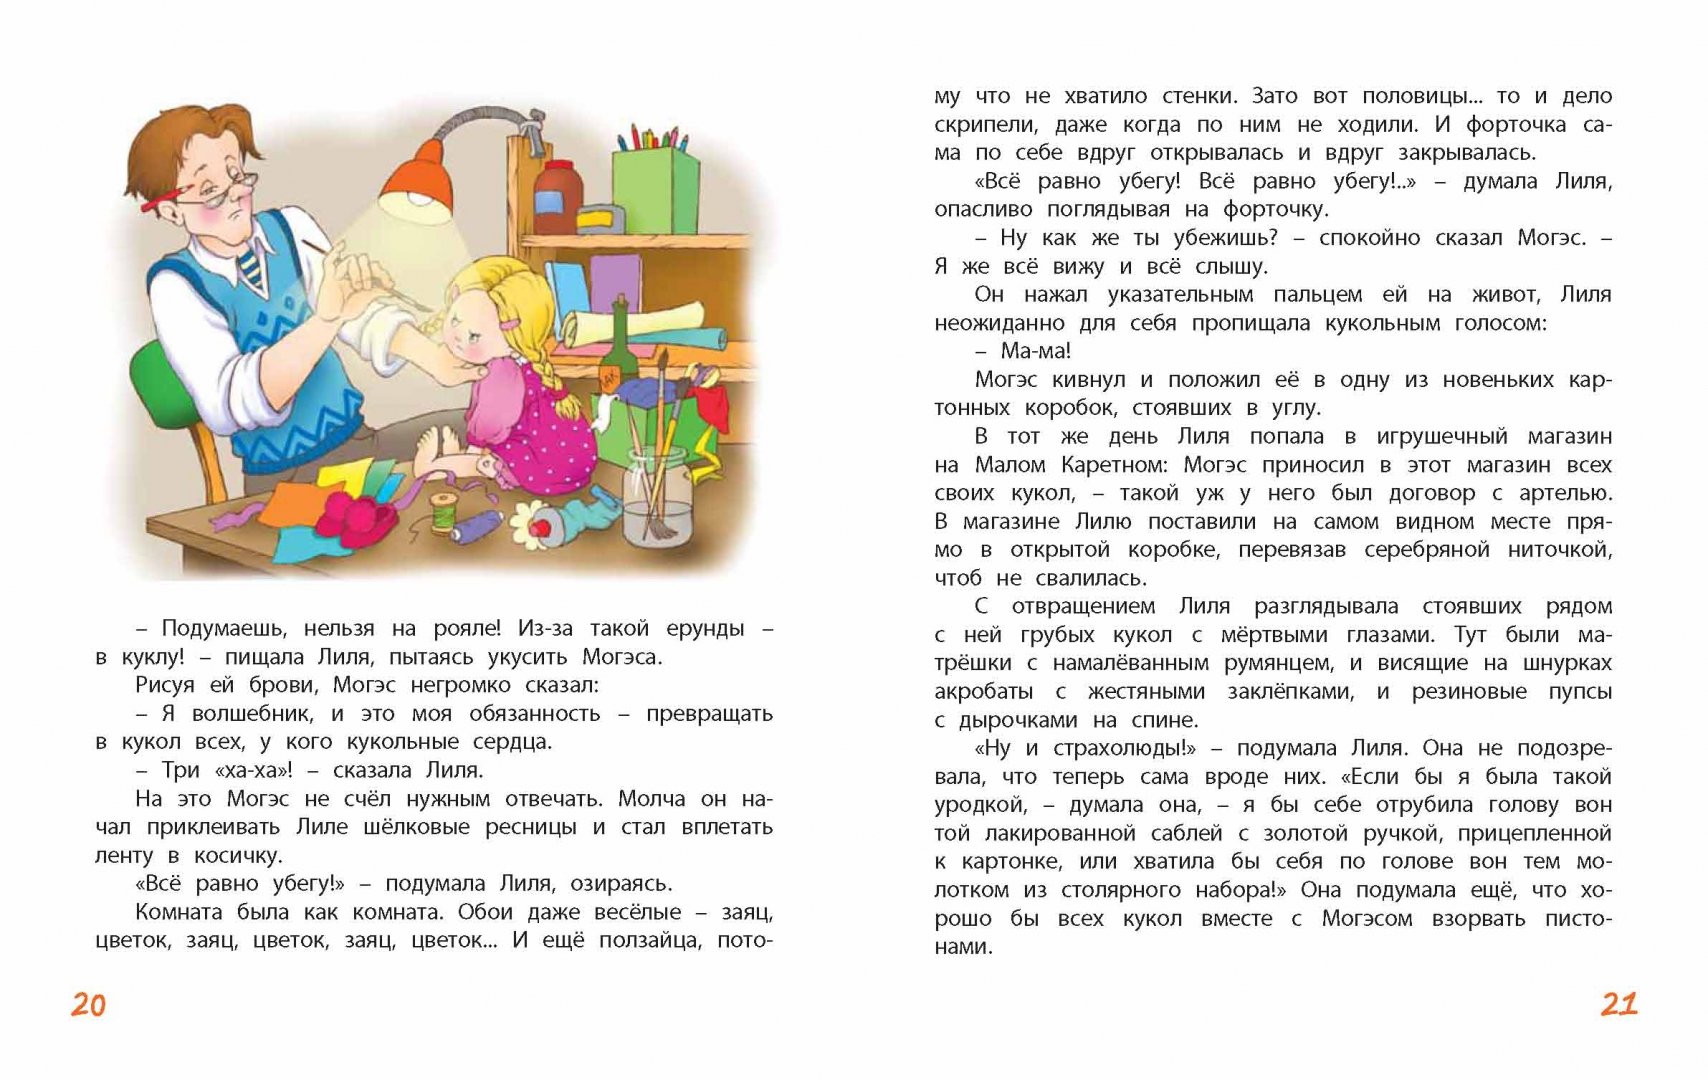 Иллюстрация 24 из 26 для Кукольная комедия - Виткович, Ягдфельд | Лабиринт - книги. Источник: Лабиринт